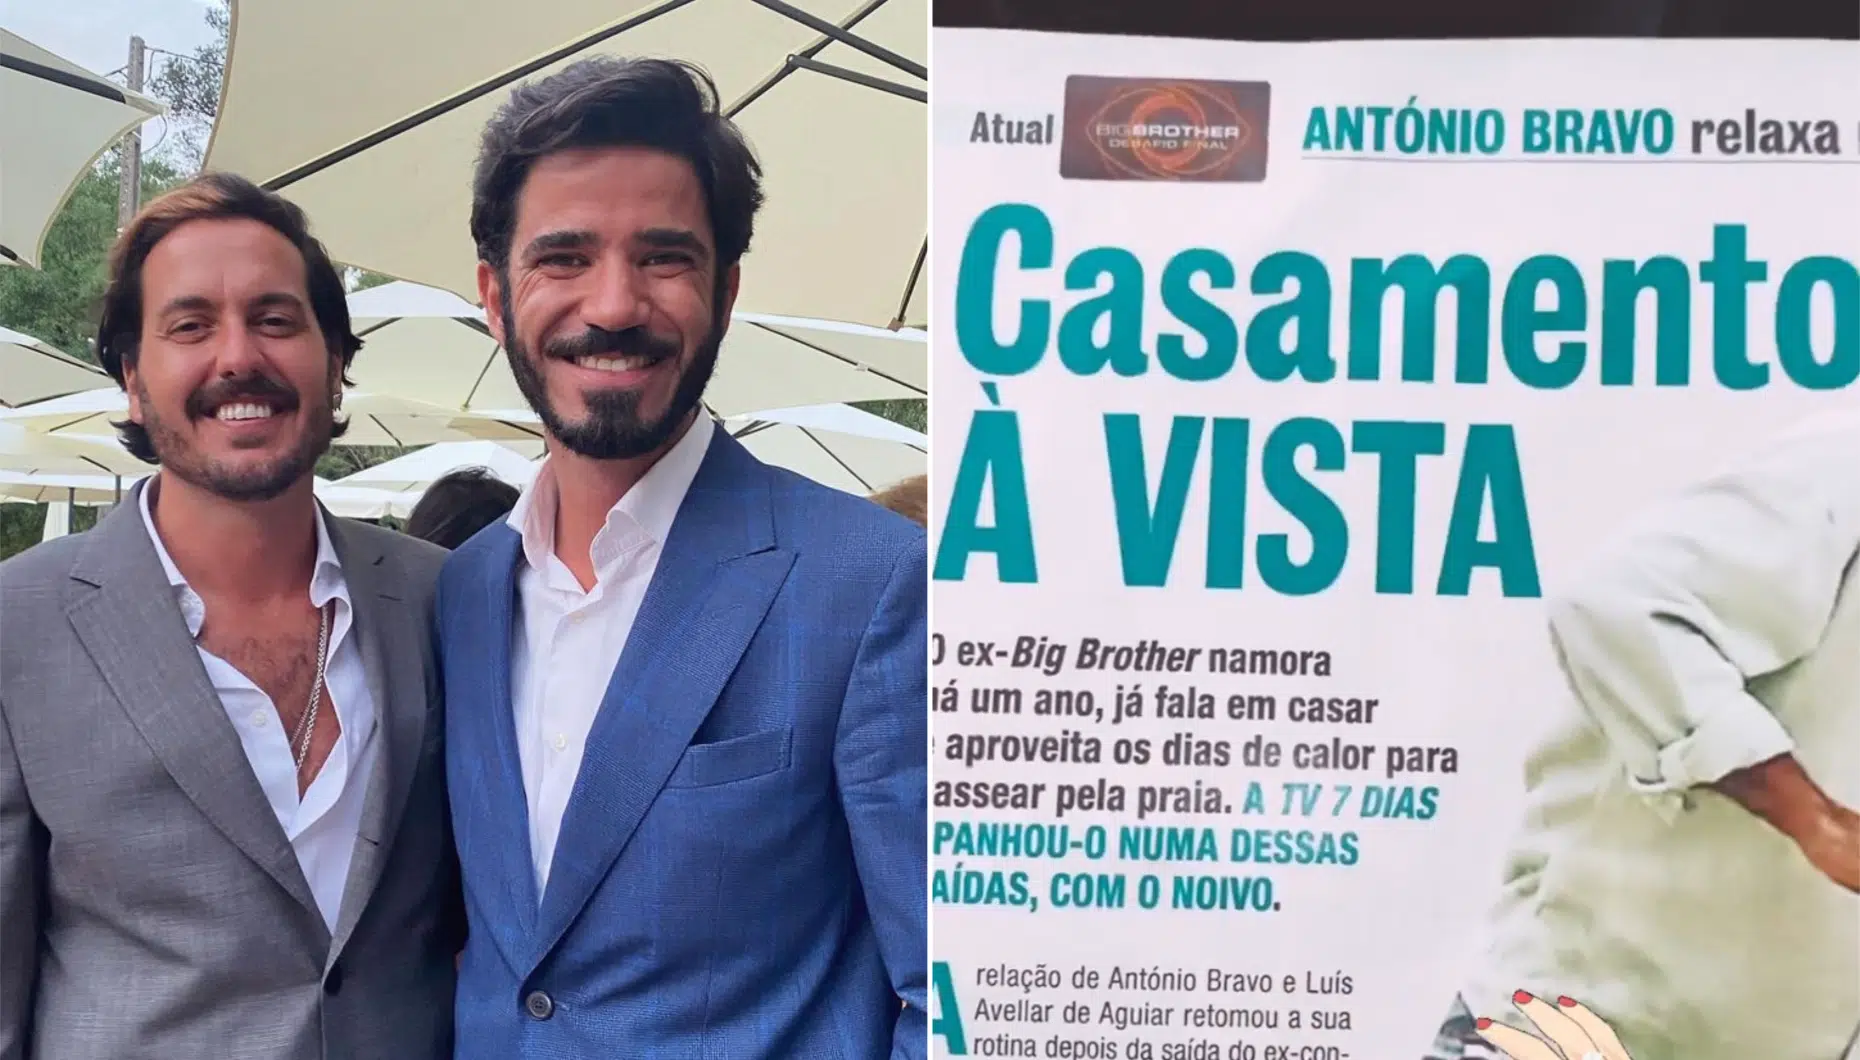 António Bravo